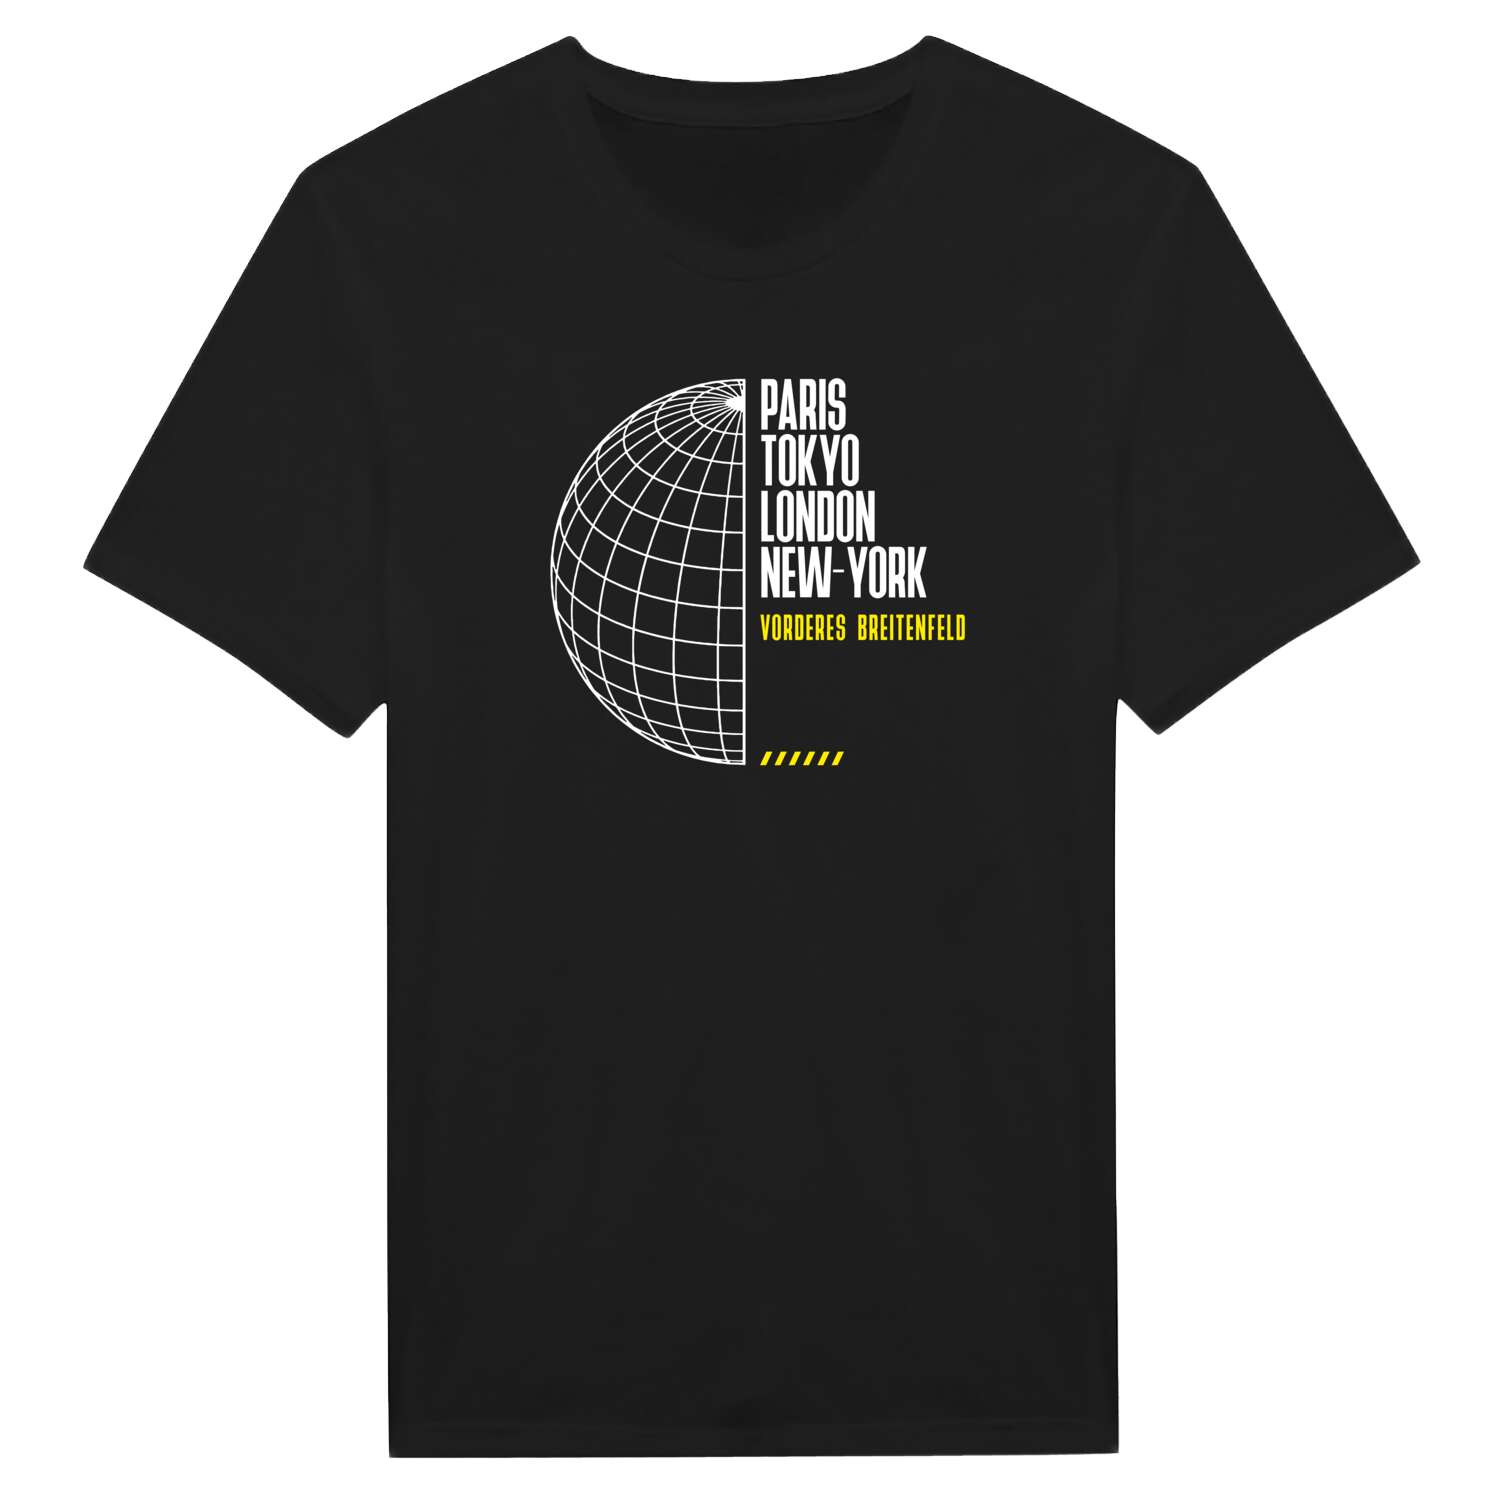 Vorderes Breitenfeld T-Shirt »Paris Tokyo London«